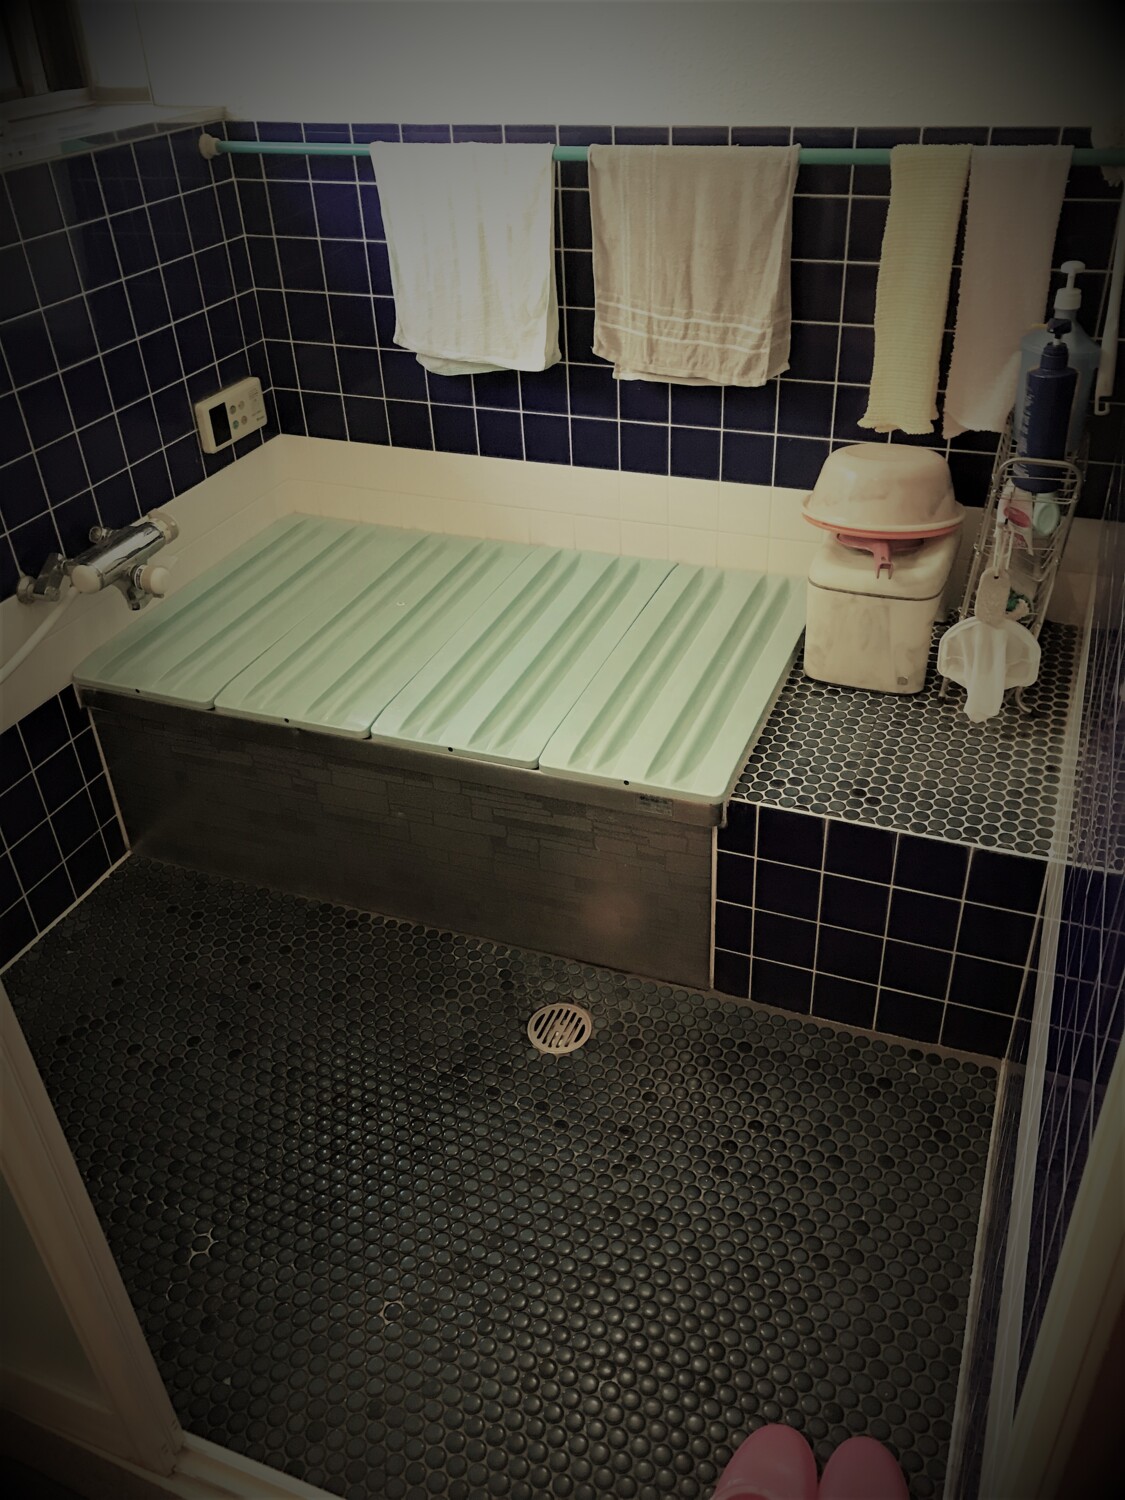 タイル貼りの寒いお風呂にさようなら！暖かバスルームで快適に。